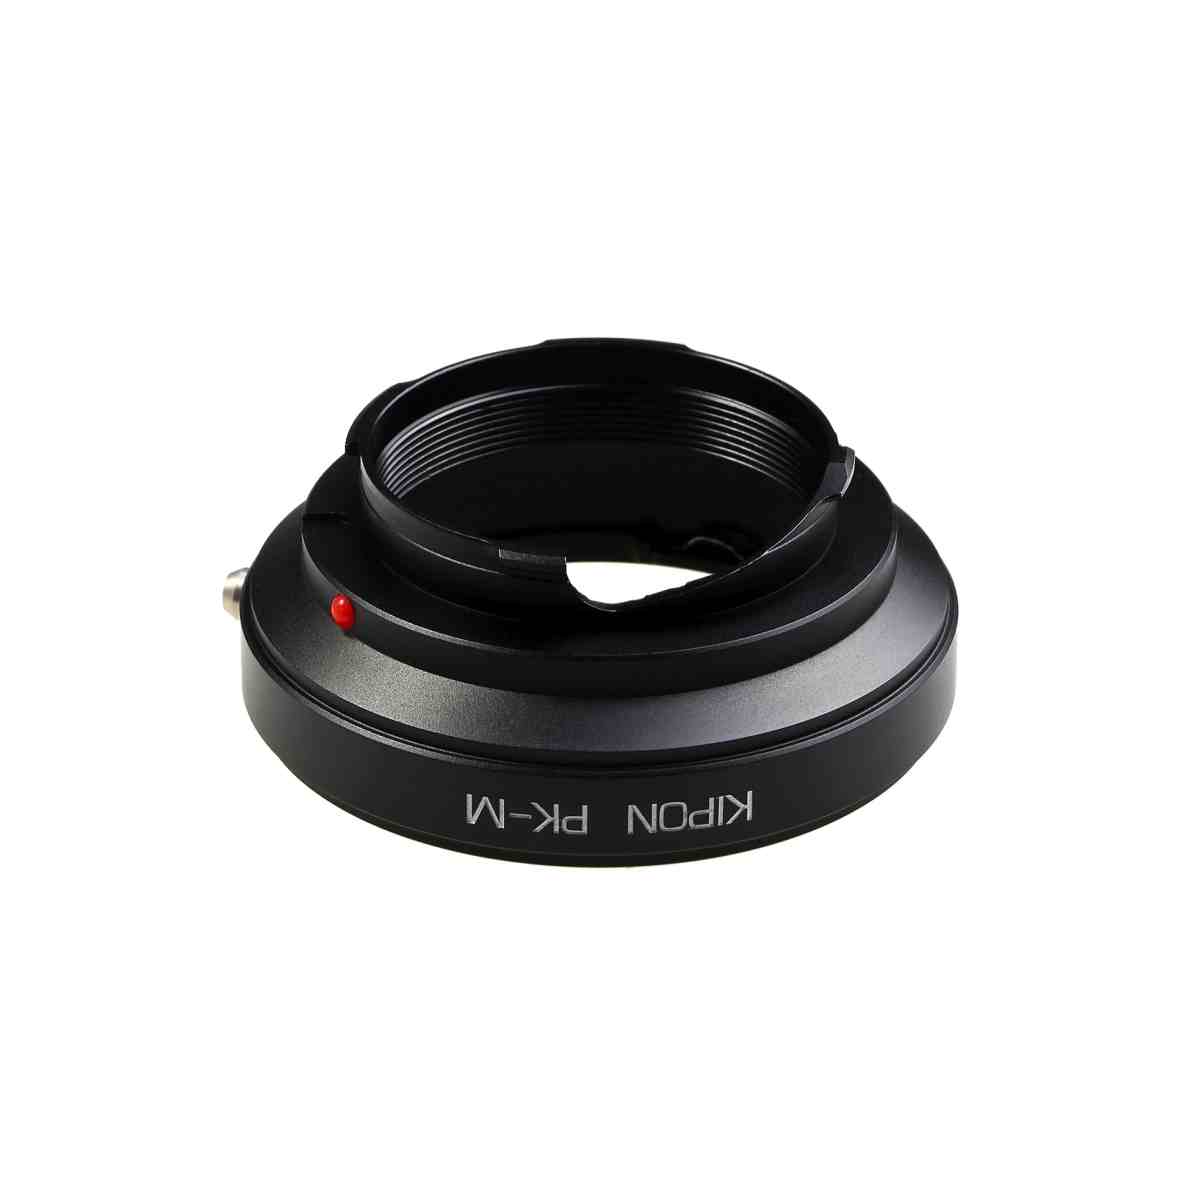 Kipon Adapter Pentax K to Leica M